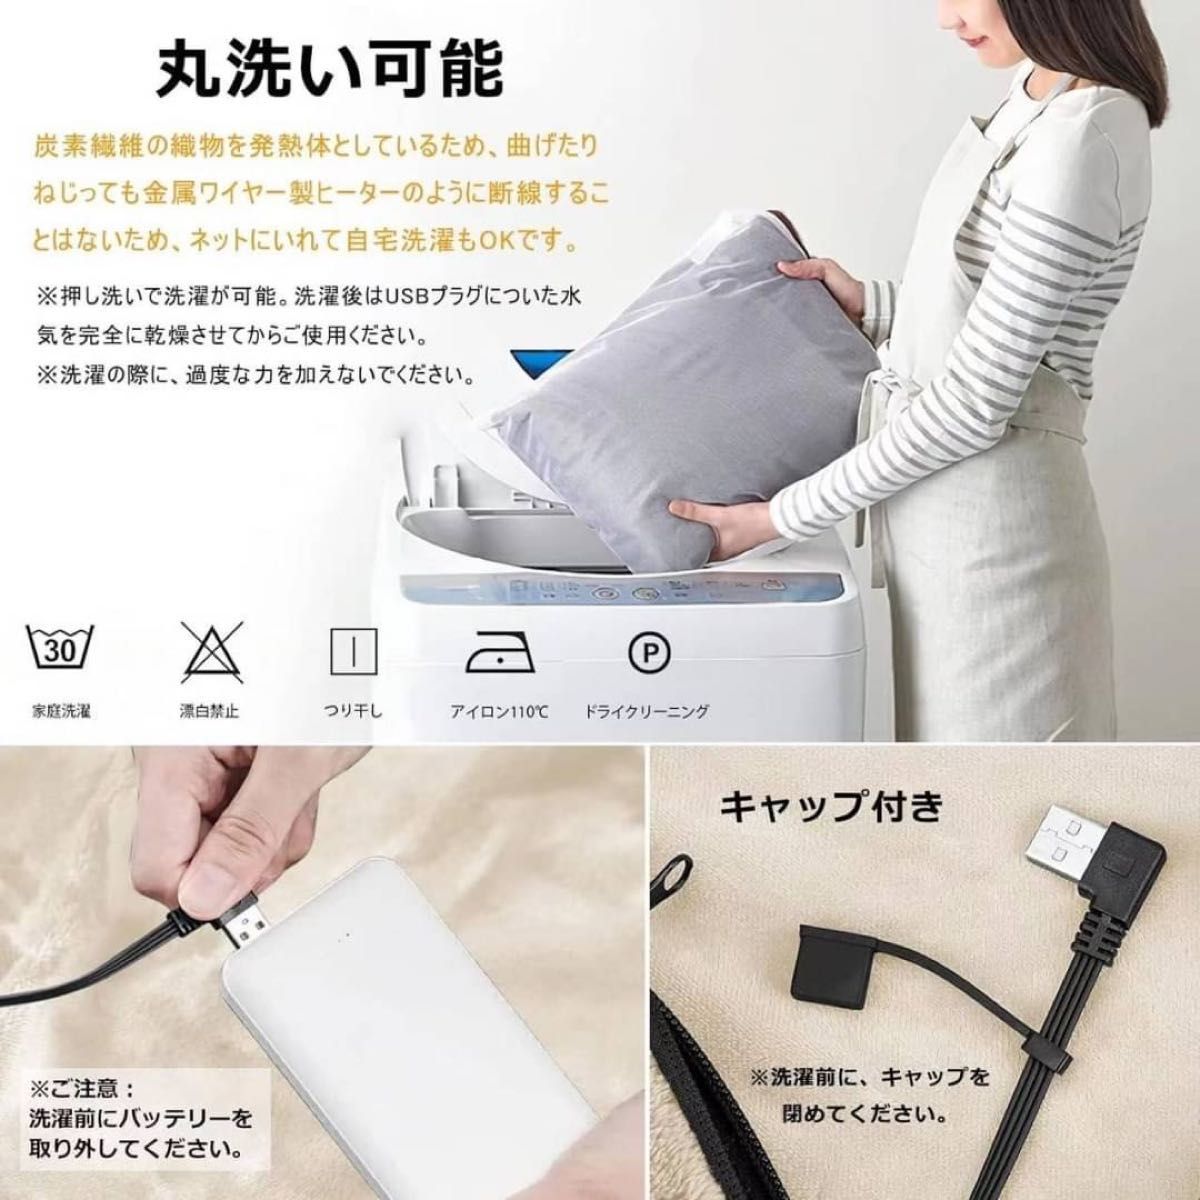 《新品未使用品》3WAY電気毛布 140×80cm USB給電 丸洗い 肩掛け ひざ掛け 毛布